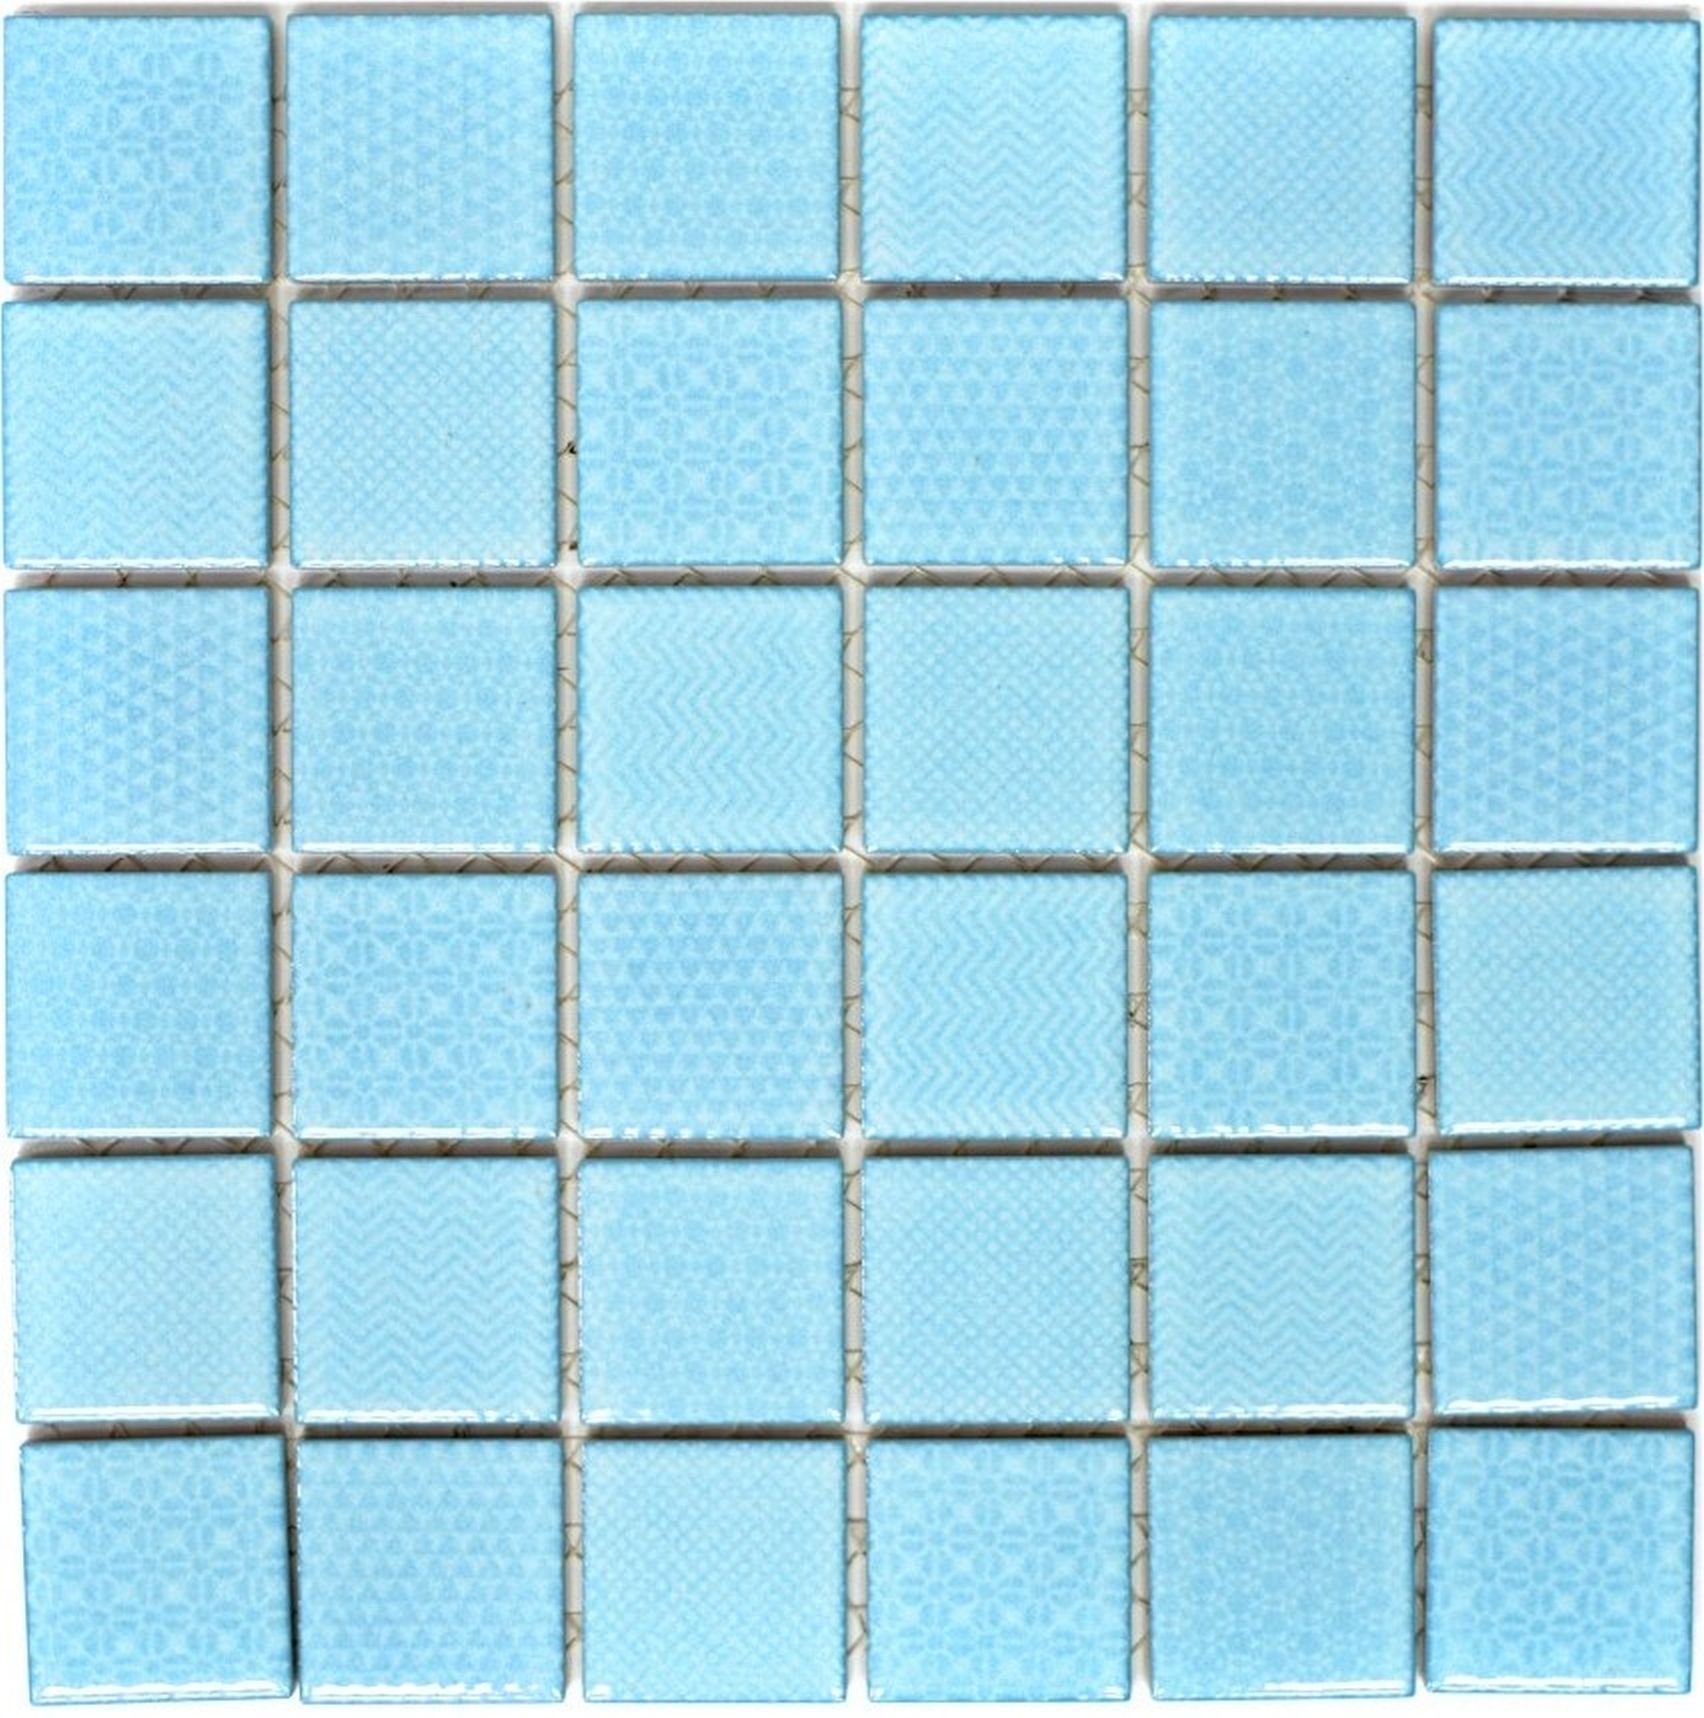 hellblau Mosaik Pool Mosani BAD Fliesenspiegel Küche Mosaikfliesen Fliese Keramik eisblau